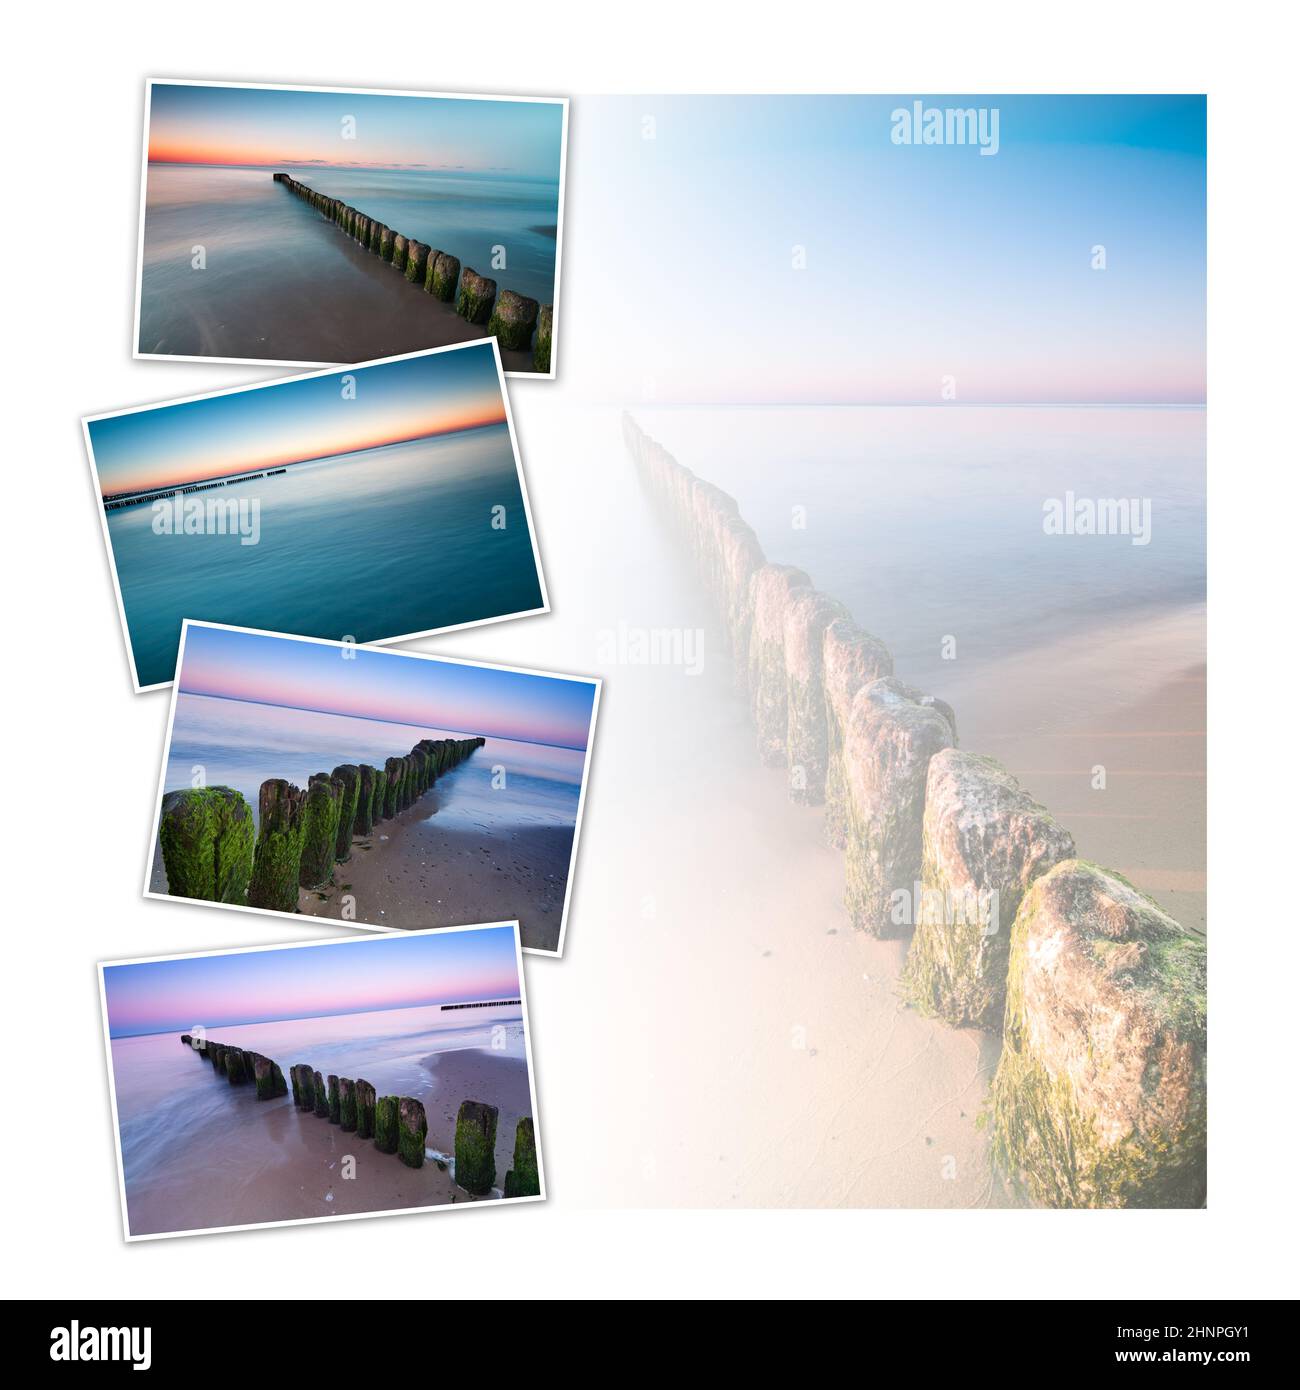 Diseño collage de postales con cuatro imágenes de rompeolas a orillas del Mar Báltico Foto de stock